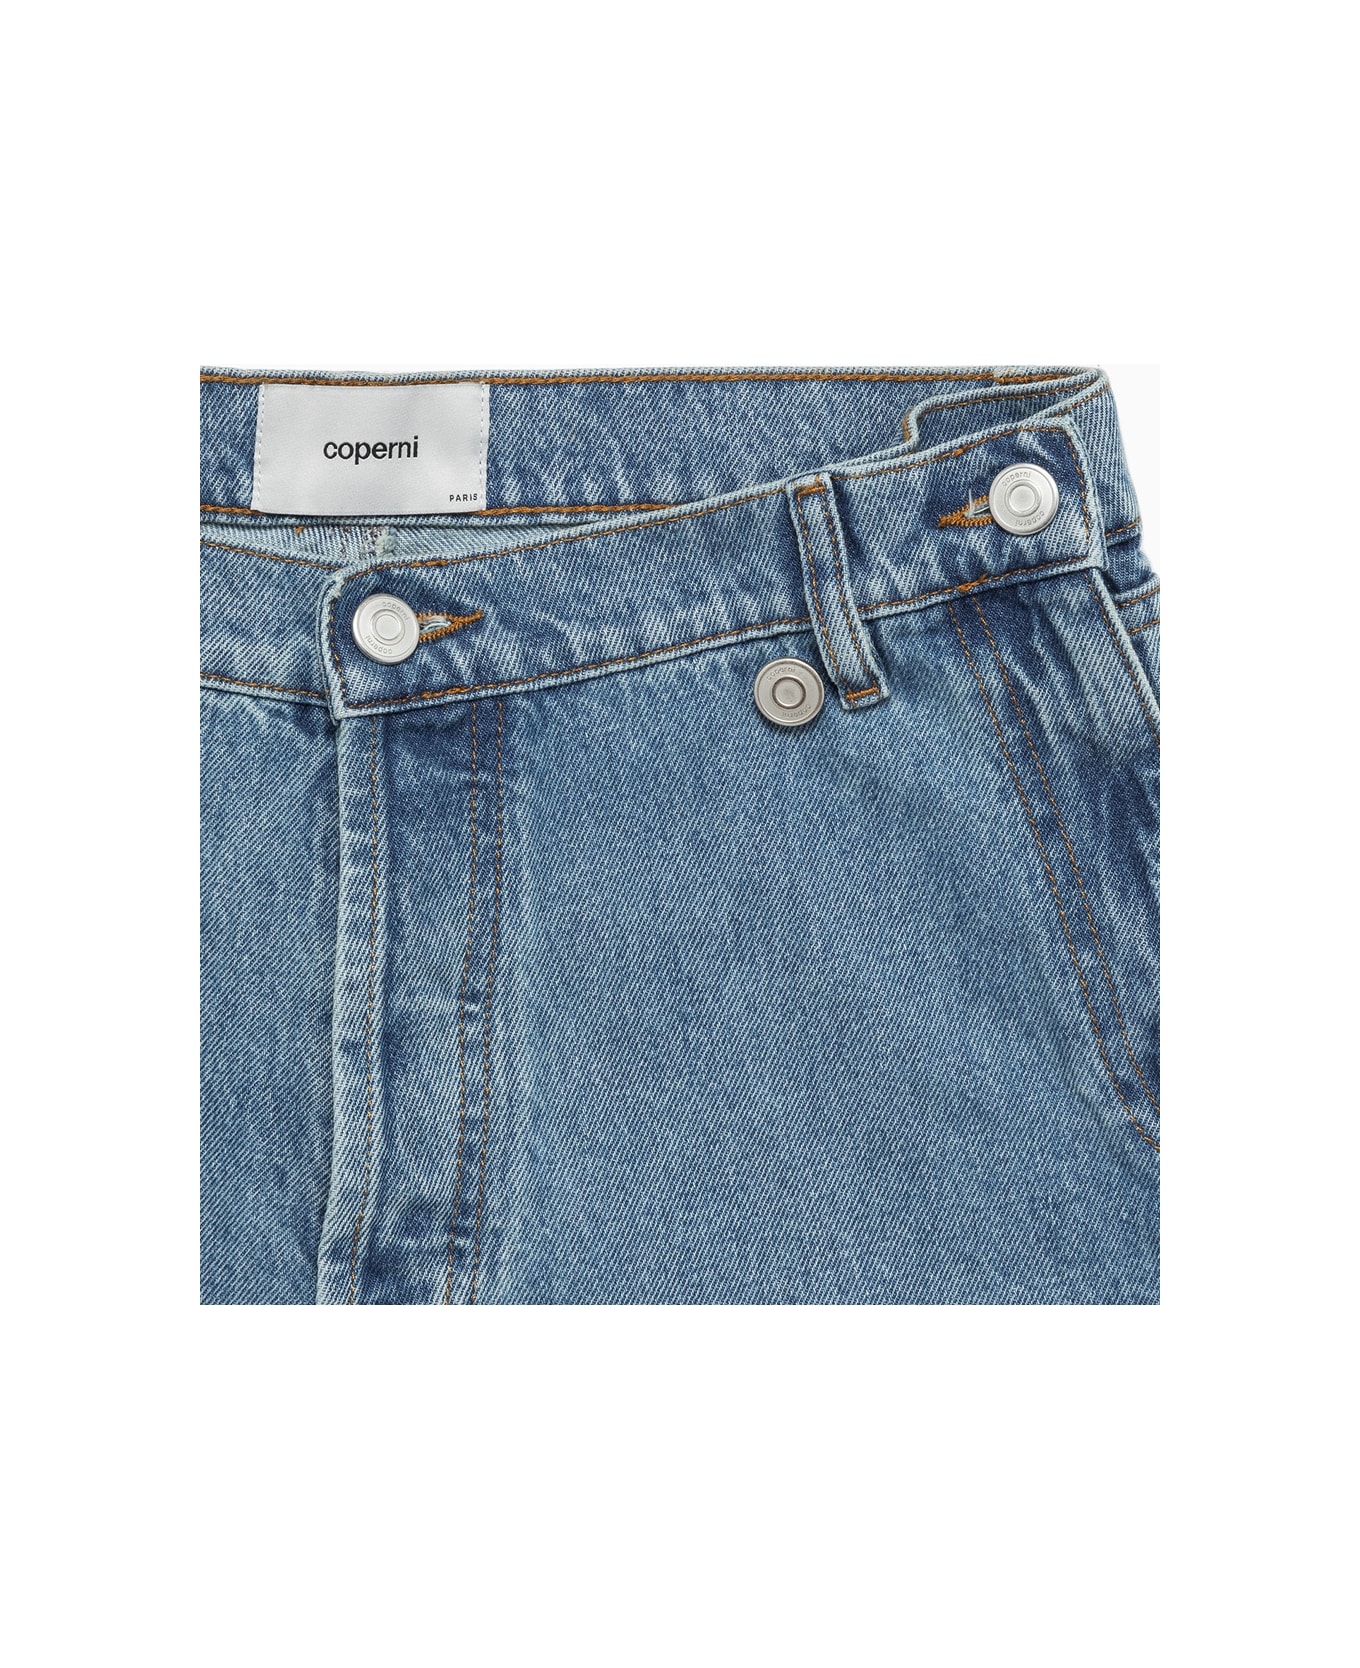 Coperni Open Hip Shorts Short - WASHED BLUE ショートパンツ